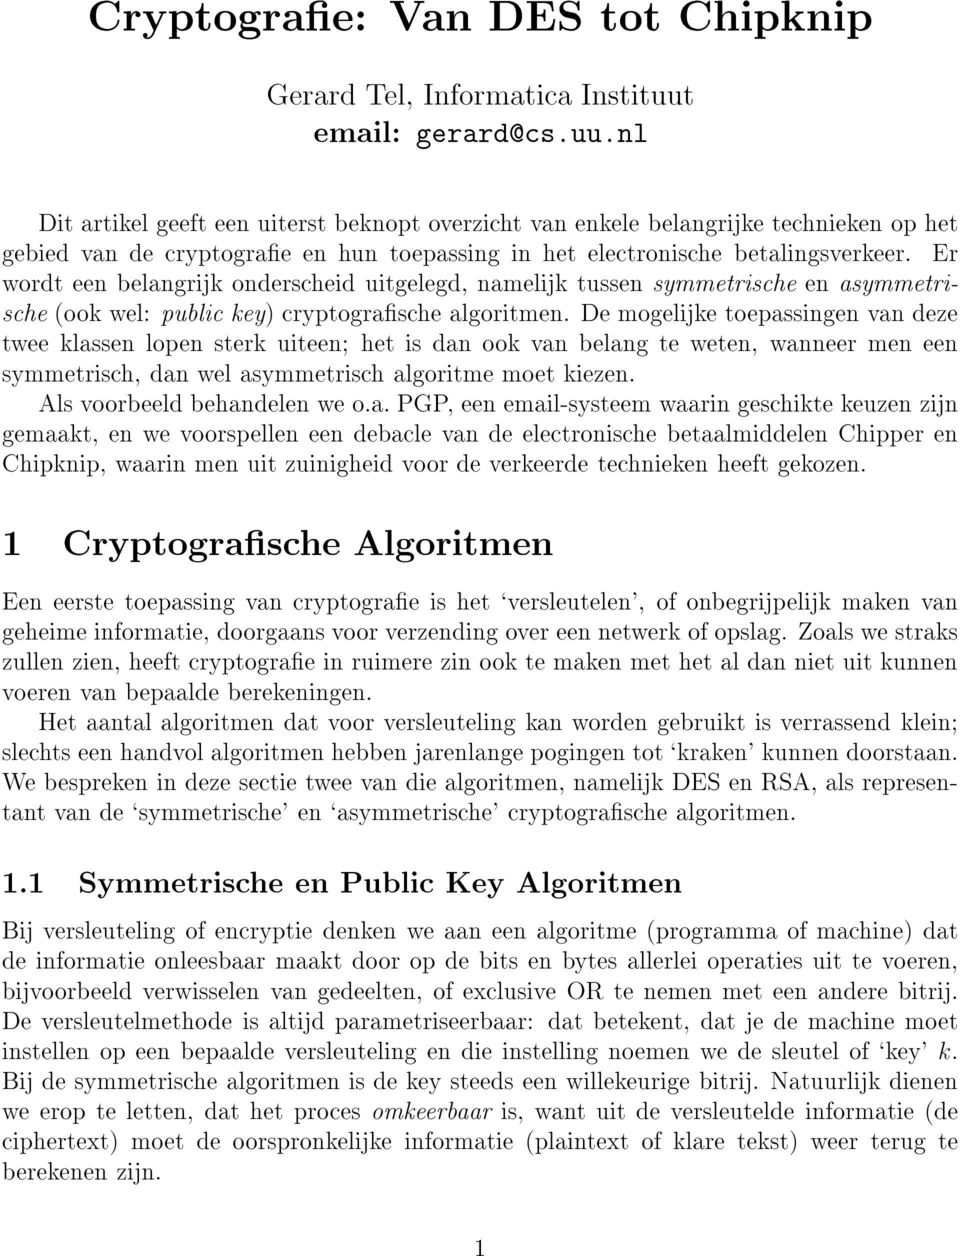 Er wordt een belangrijk onderscheid uitgelegd, namelijk tussen symmetrische en asymmetrische (ook wel: public key) cryptograsche algoritmen.